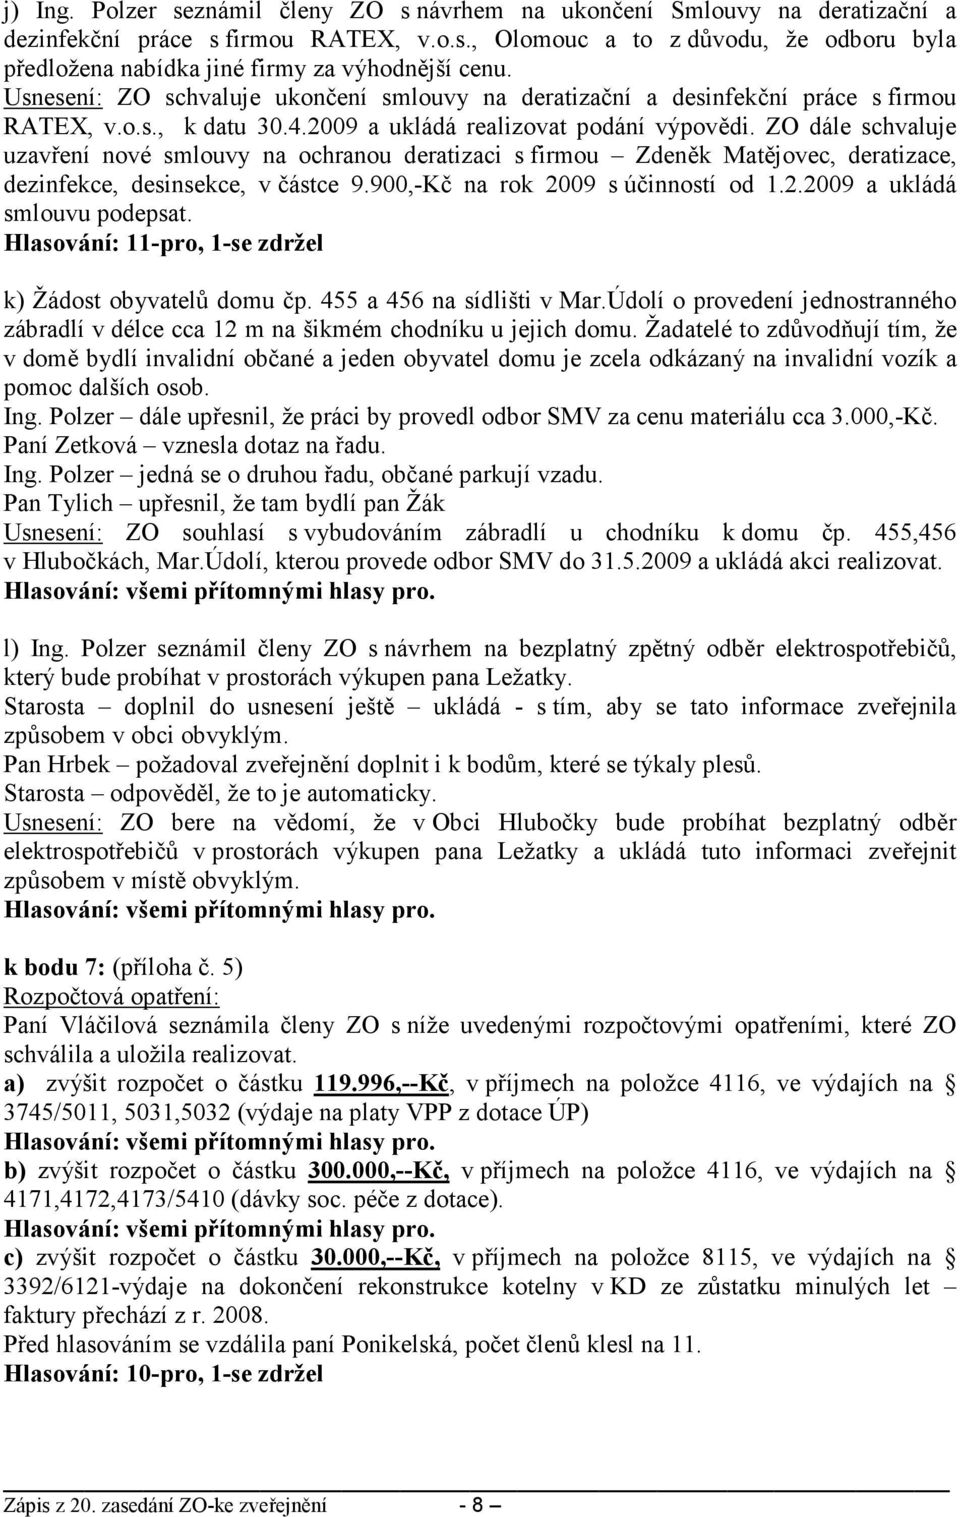 ZO dále schvaluje uzavření nové smlouvy na ochranou deratizaci s firmou Zdeněk Matějovec, deratizace, dezinfekce, desinsekce, v částce 9.900,-Kč na rok 2009 s účinností od 1.2.2009 a ukládá smlouvu podepsat.